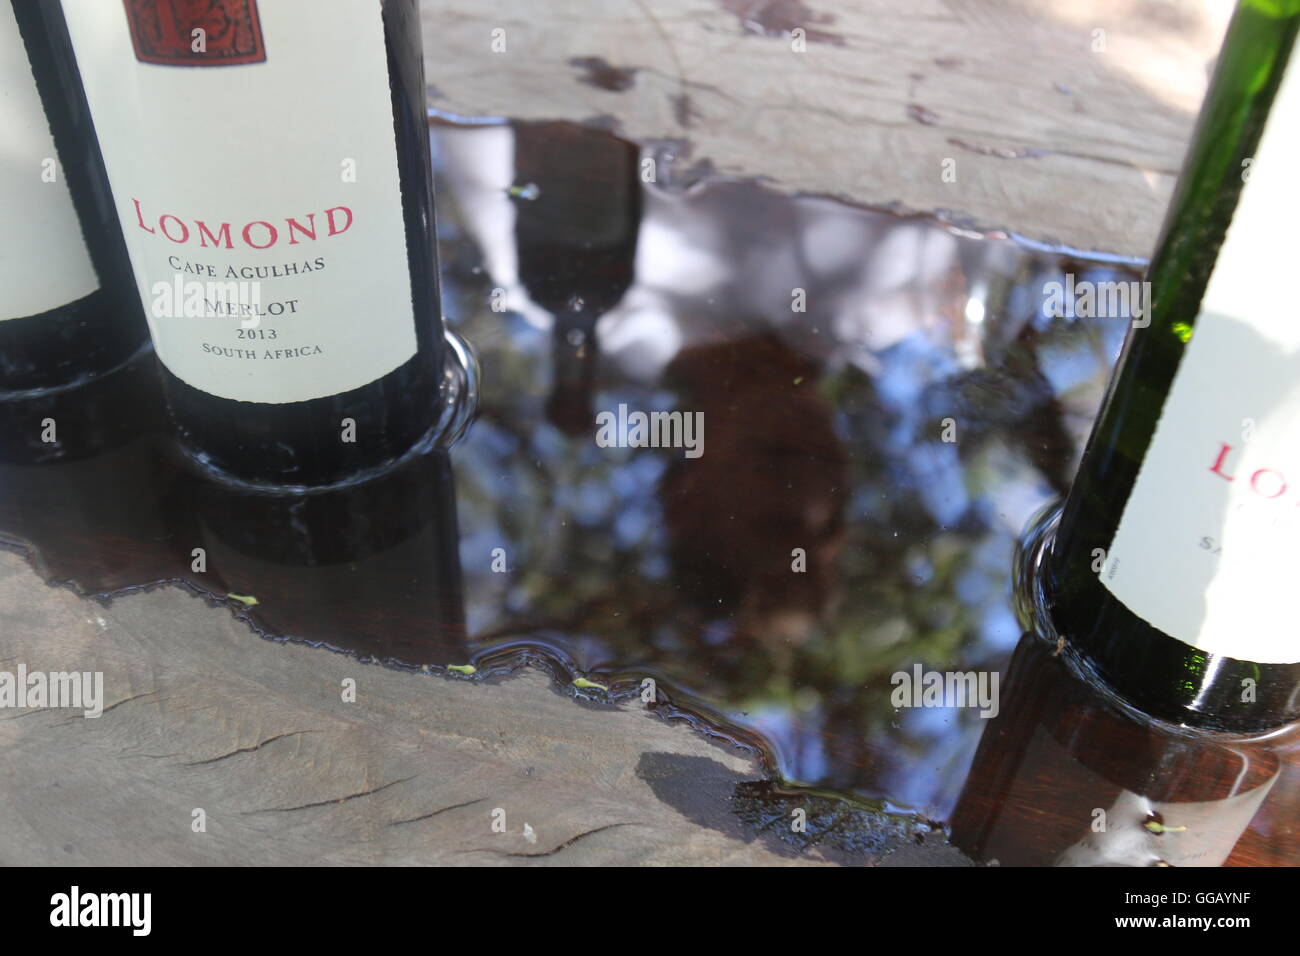 Flaschen auf einen Tisch stehend im Wasser bei Lomond Wines, Kap Agulhas, Südafrika Stockfoto